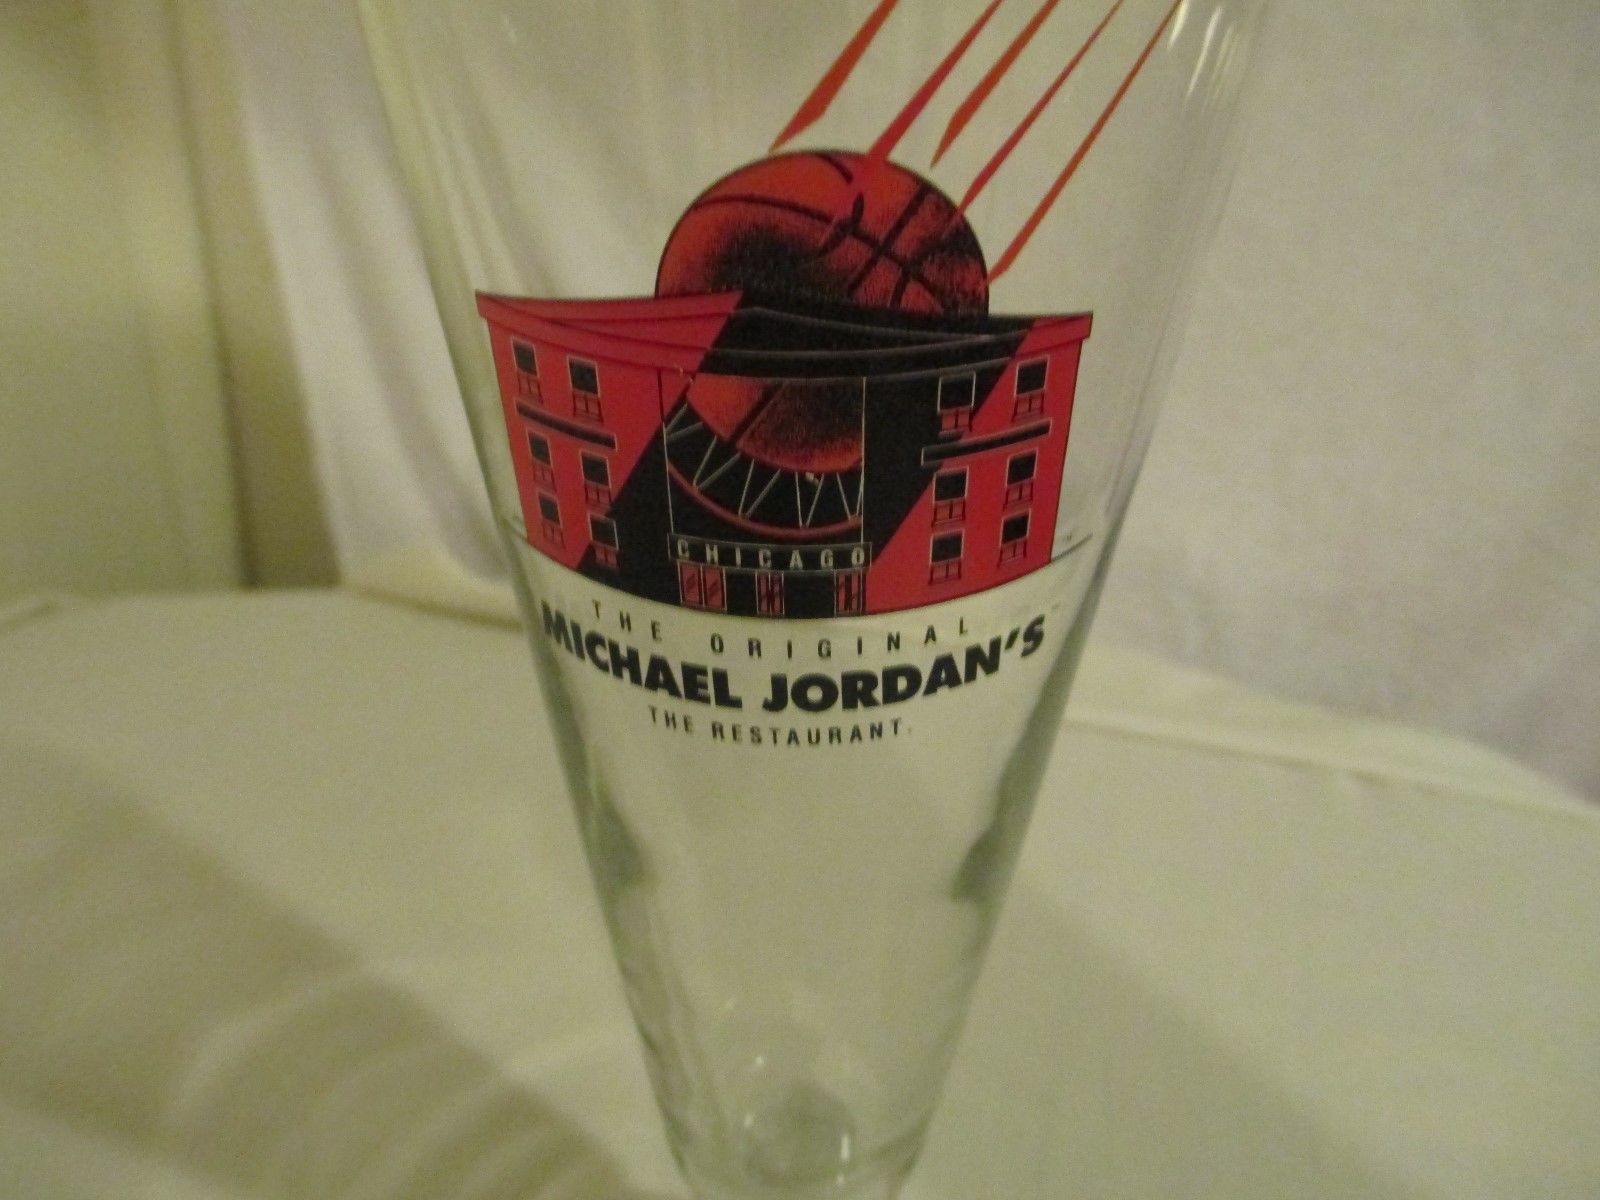 Michael Jordan Beer Glass